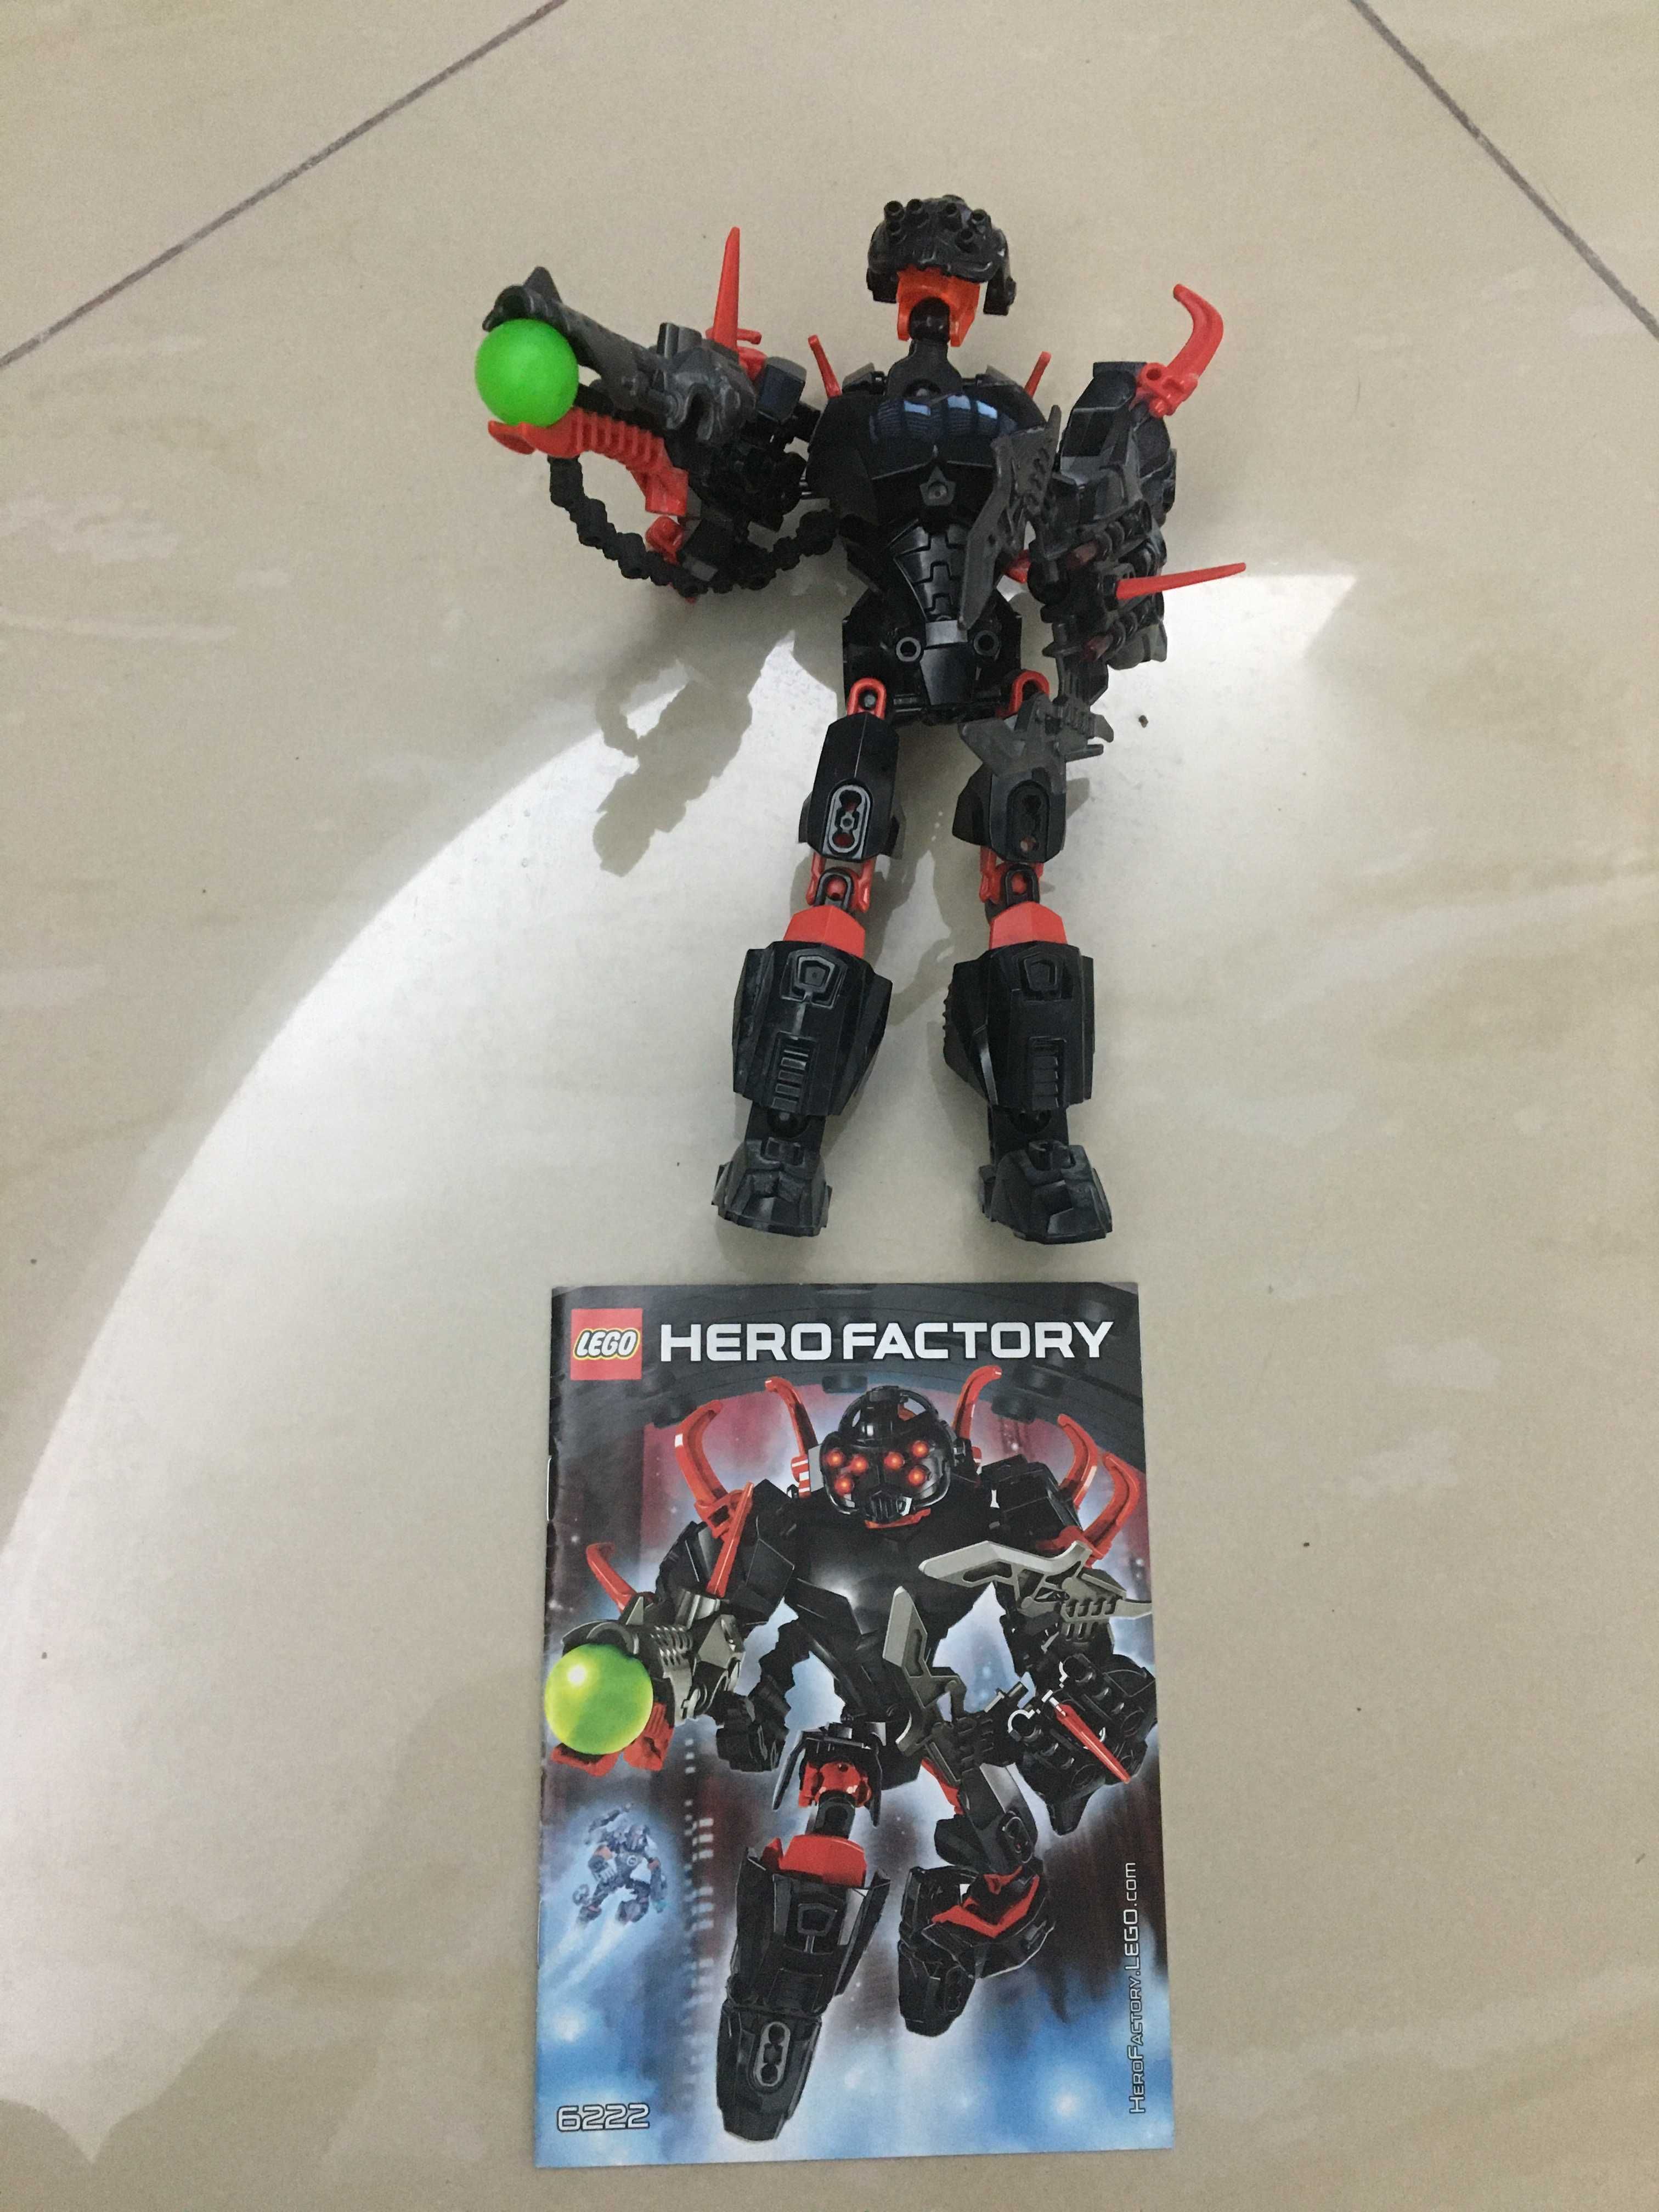 Hero Factory Lego